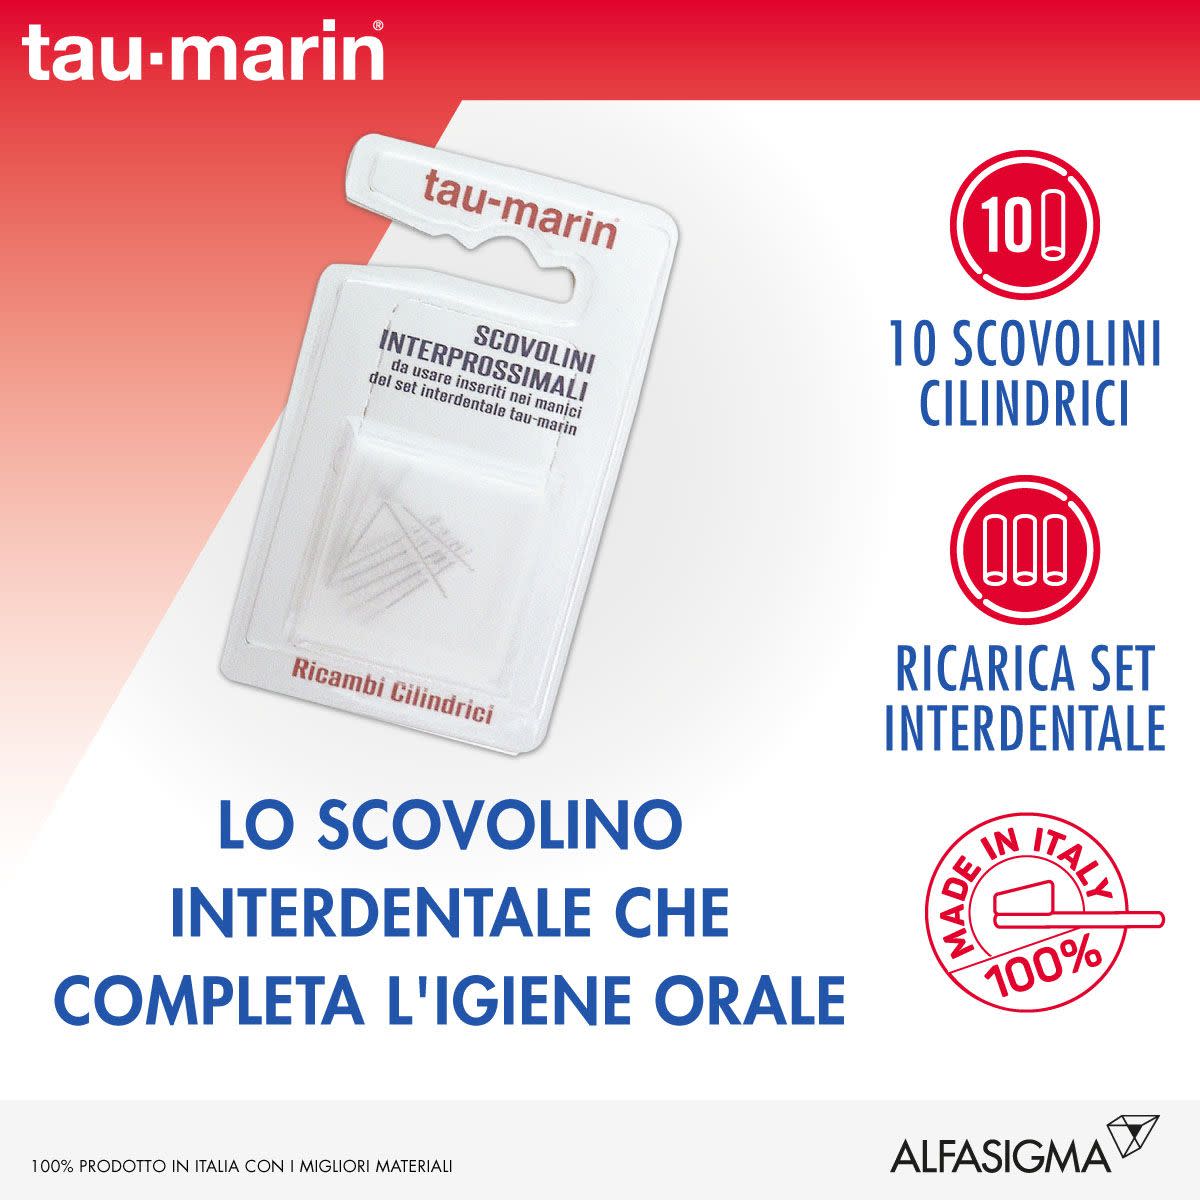 909303265 - Tau-Marin Scovolini Ricambi Cilindrici 10 pezzi - 4702922_3.jpg